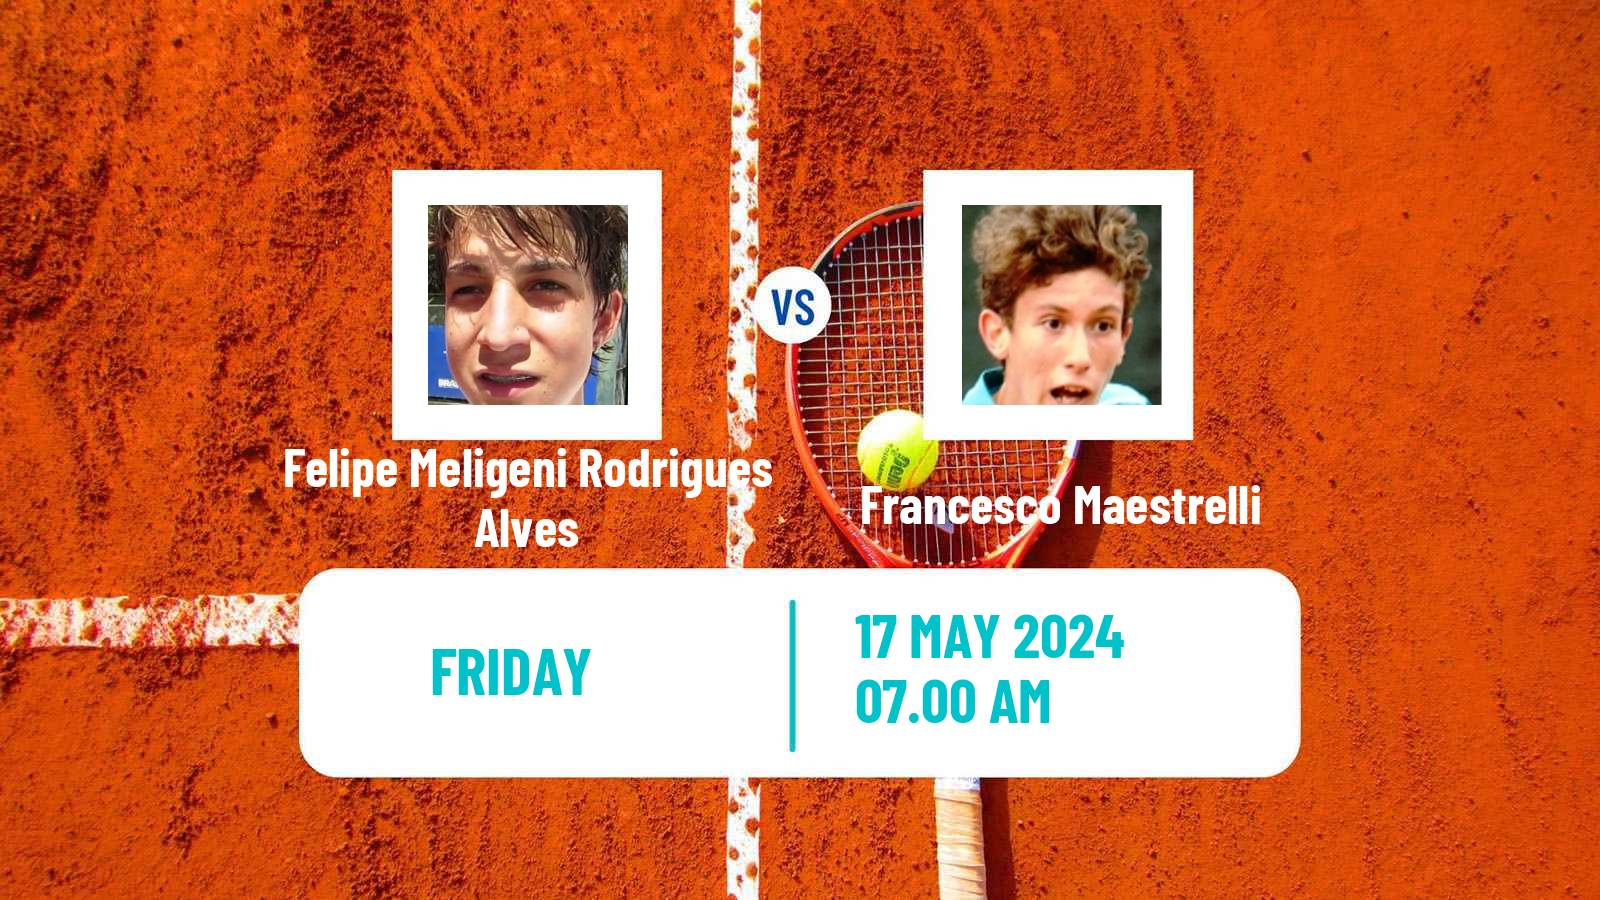 Tennis Turin 2 Challenger Men Felipe Meligeni Rodrigues Alves - Francesco Maestrelli